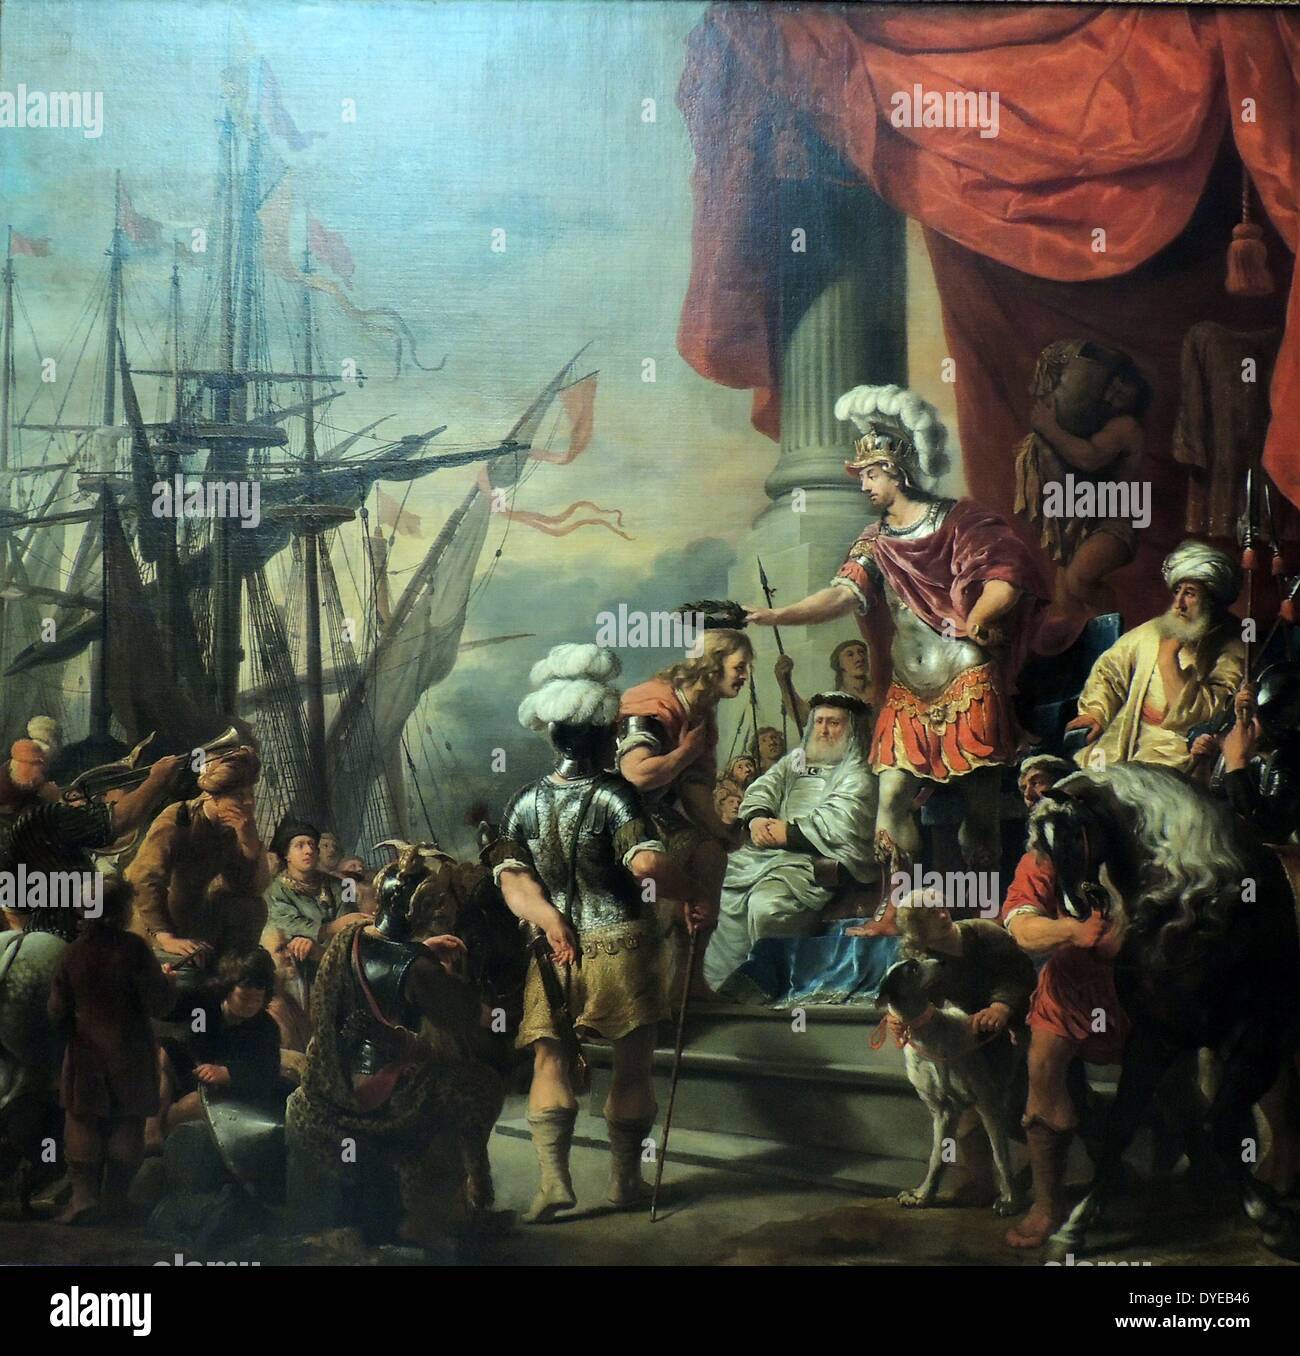 Aeneas am Hof von LATINUS von Ferdinand Bol (1616-1680), Öl auf Leinwand, c 1661-1664. Bol Malerei, für die Amsterdamer Admiralität, zeigt eine Szene aus Vergils Aeneis. Aeneas gratuliert einem der Kapitäne, die vier Schiffe, die in einem Rennen gegeneinander an. Alle vier waren auf ihre Rückkehr belohnt, auch der Kapitän, der seinen Steuermann über Bord für Ungehorsam eine Bestellung warf. Das Gemälde wurde von einem Gedicht von Vondel, und betonte die Wichtigkeit von Festigkeit und Großzügigkeit in der guten Regierung begleitet. Stockfoto